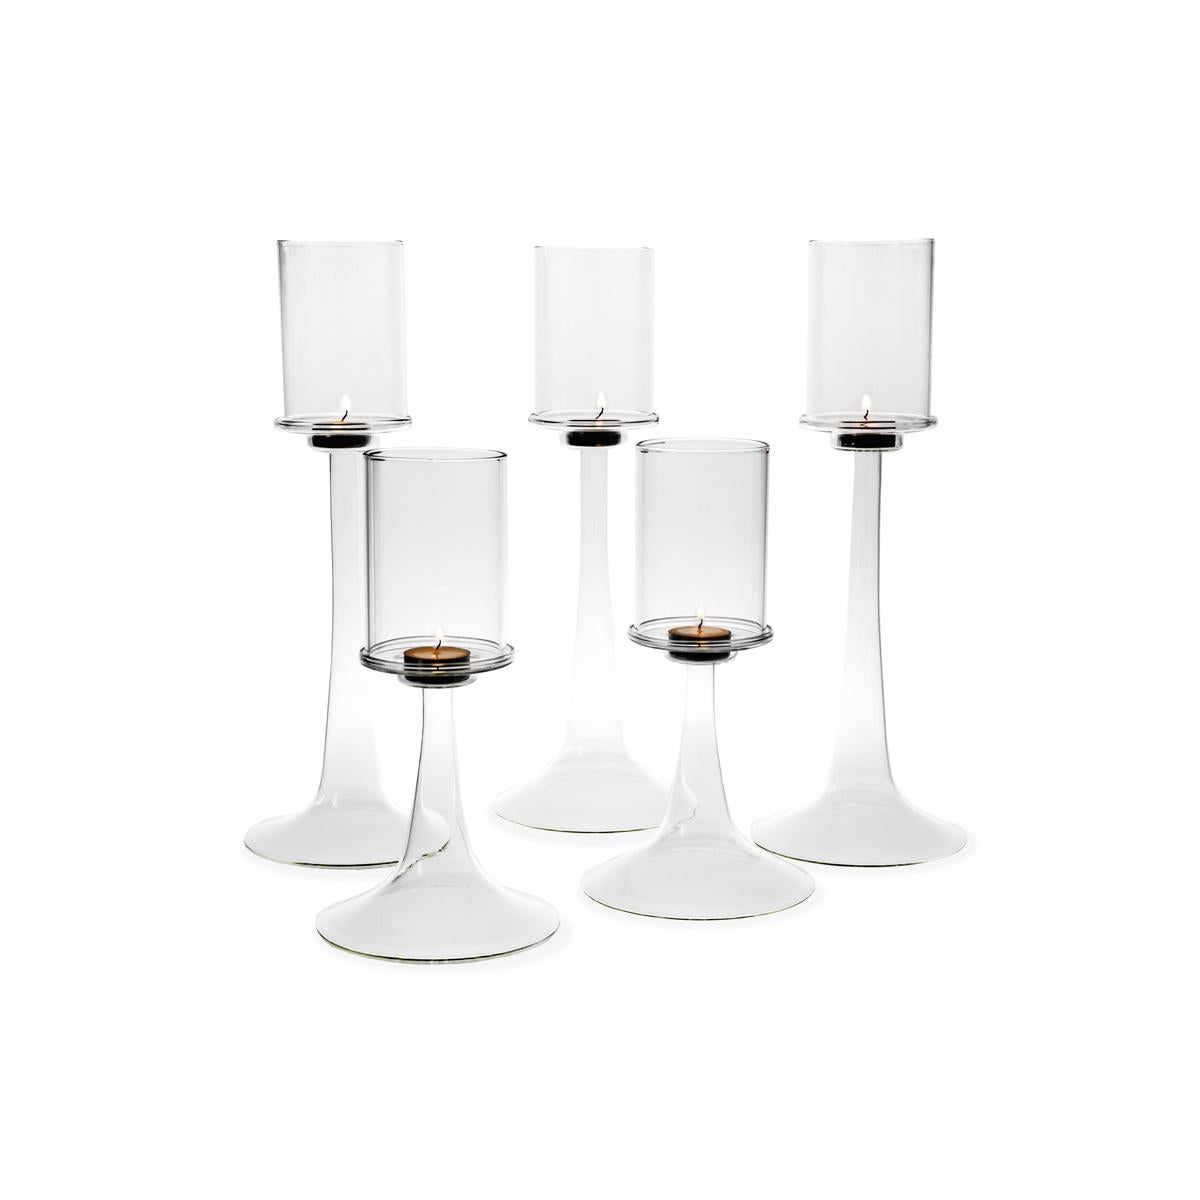 Fiamma ist ein eleganter Kerzenhalter aus mundgeblasenem Glas, der aus zwei Elementen besteht: einem sich verjüngenden und schlanken Sockel, auf dem ein zylindrischer Lampenschirm liegt. Fiamma, entworfen von Aldo Cibic, ist auch in einer kleineren